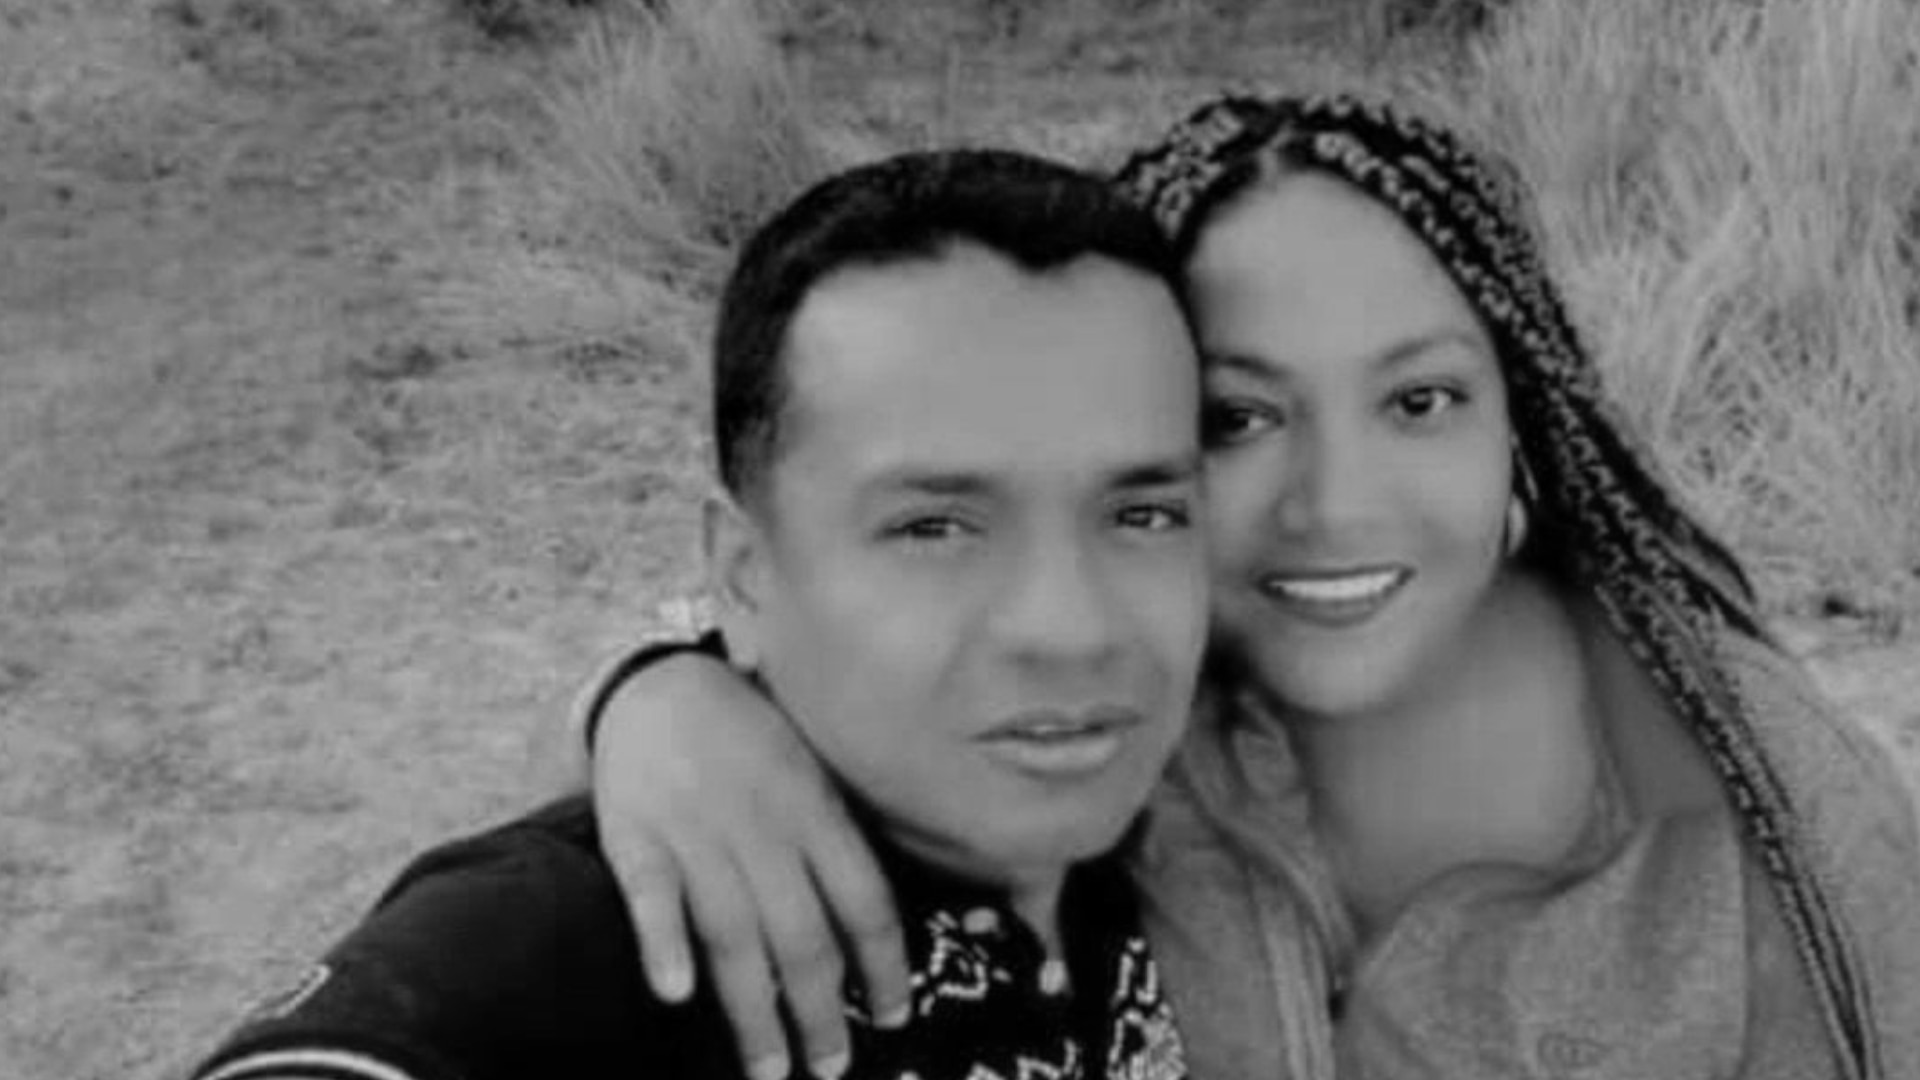 El líder social Jairo Enrique Tombé y su esposa Leonora González fueron hallados muertos en una fosa común en El Tambo (Cauca), luego de ser reportados como desaparecidos desde el 31 de mayo. (Asoinca)